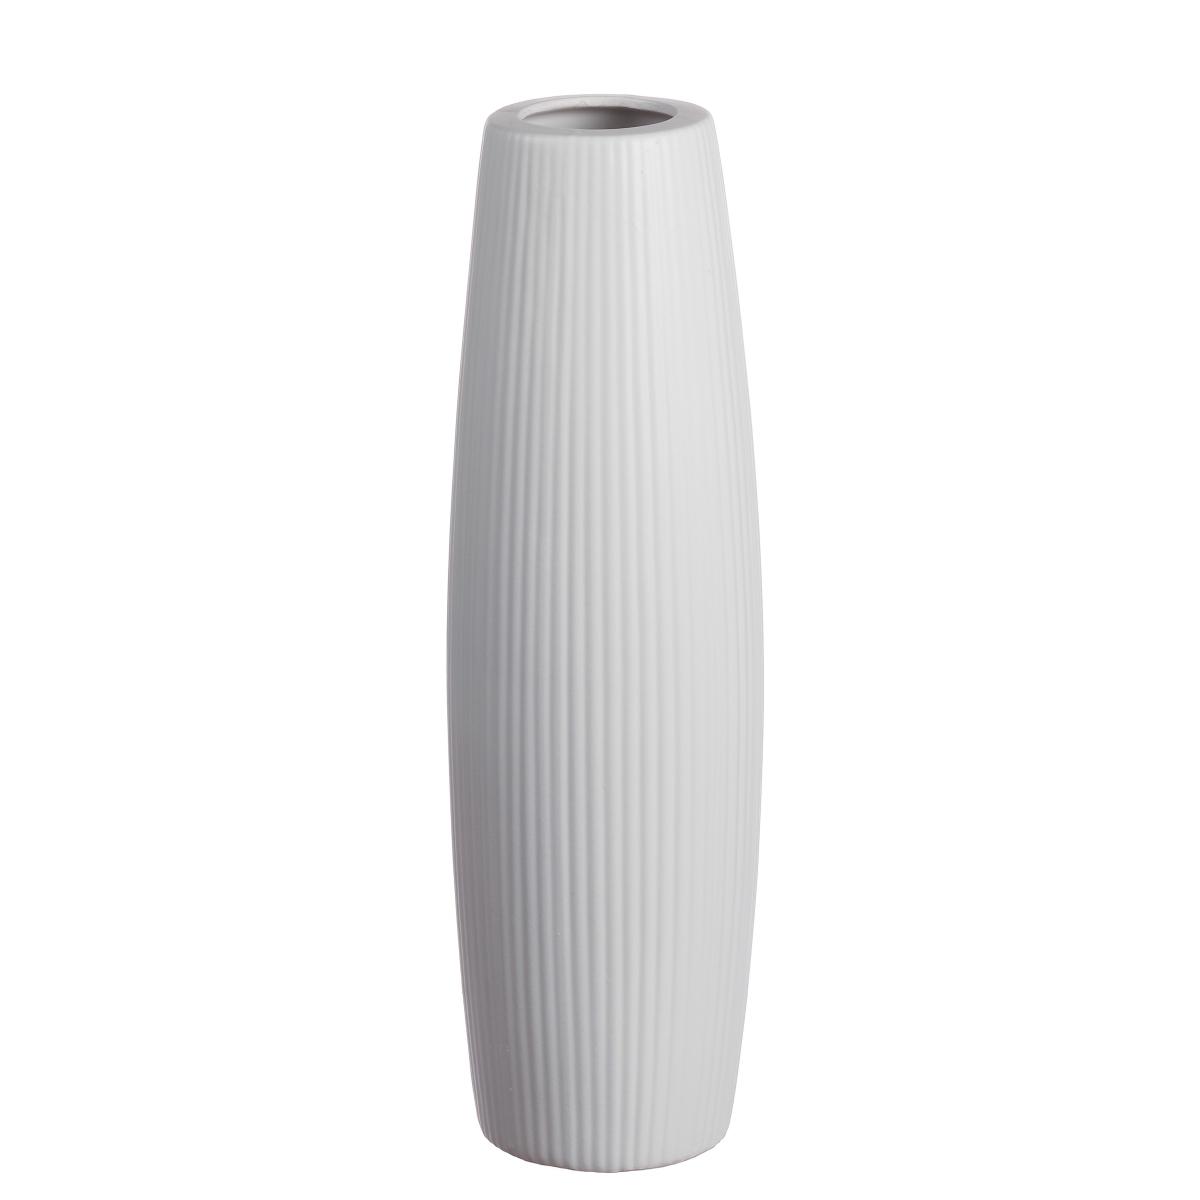 Vaso in ceramica blanque d13,5xh46 cm